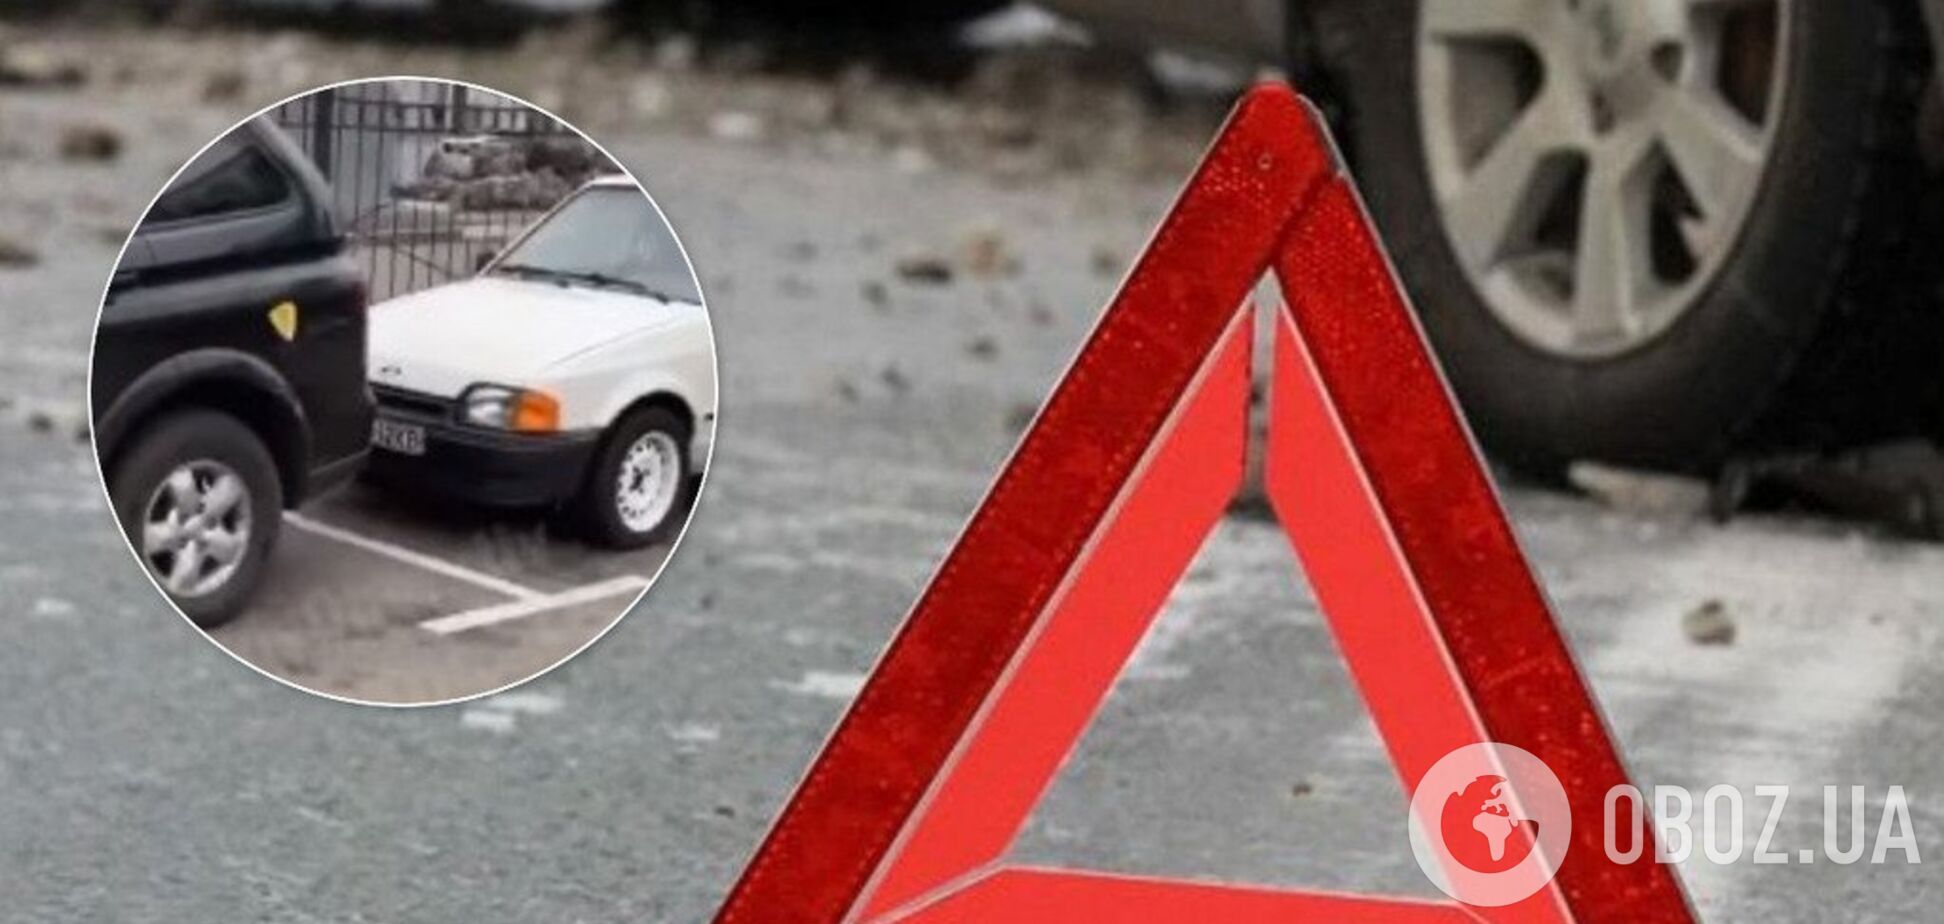 У Києві дівчина на Porsche переплутала педалі і розбила шість авто: відео ДТП